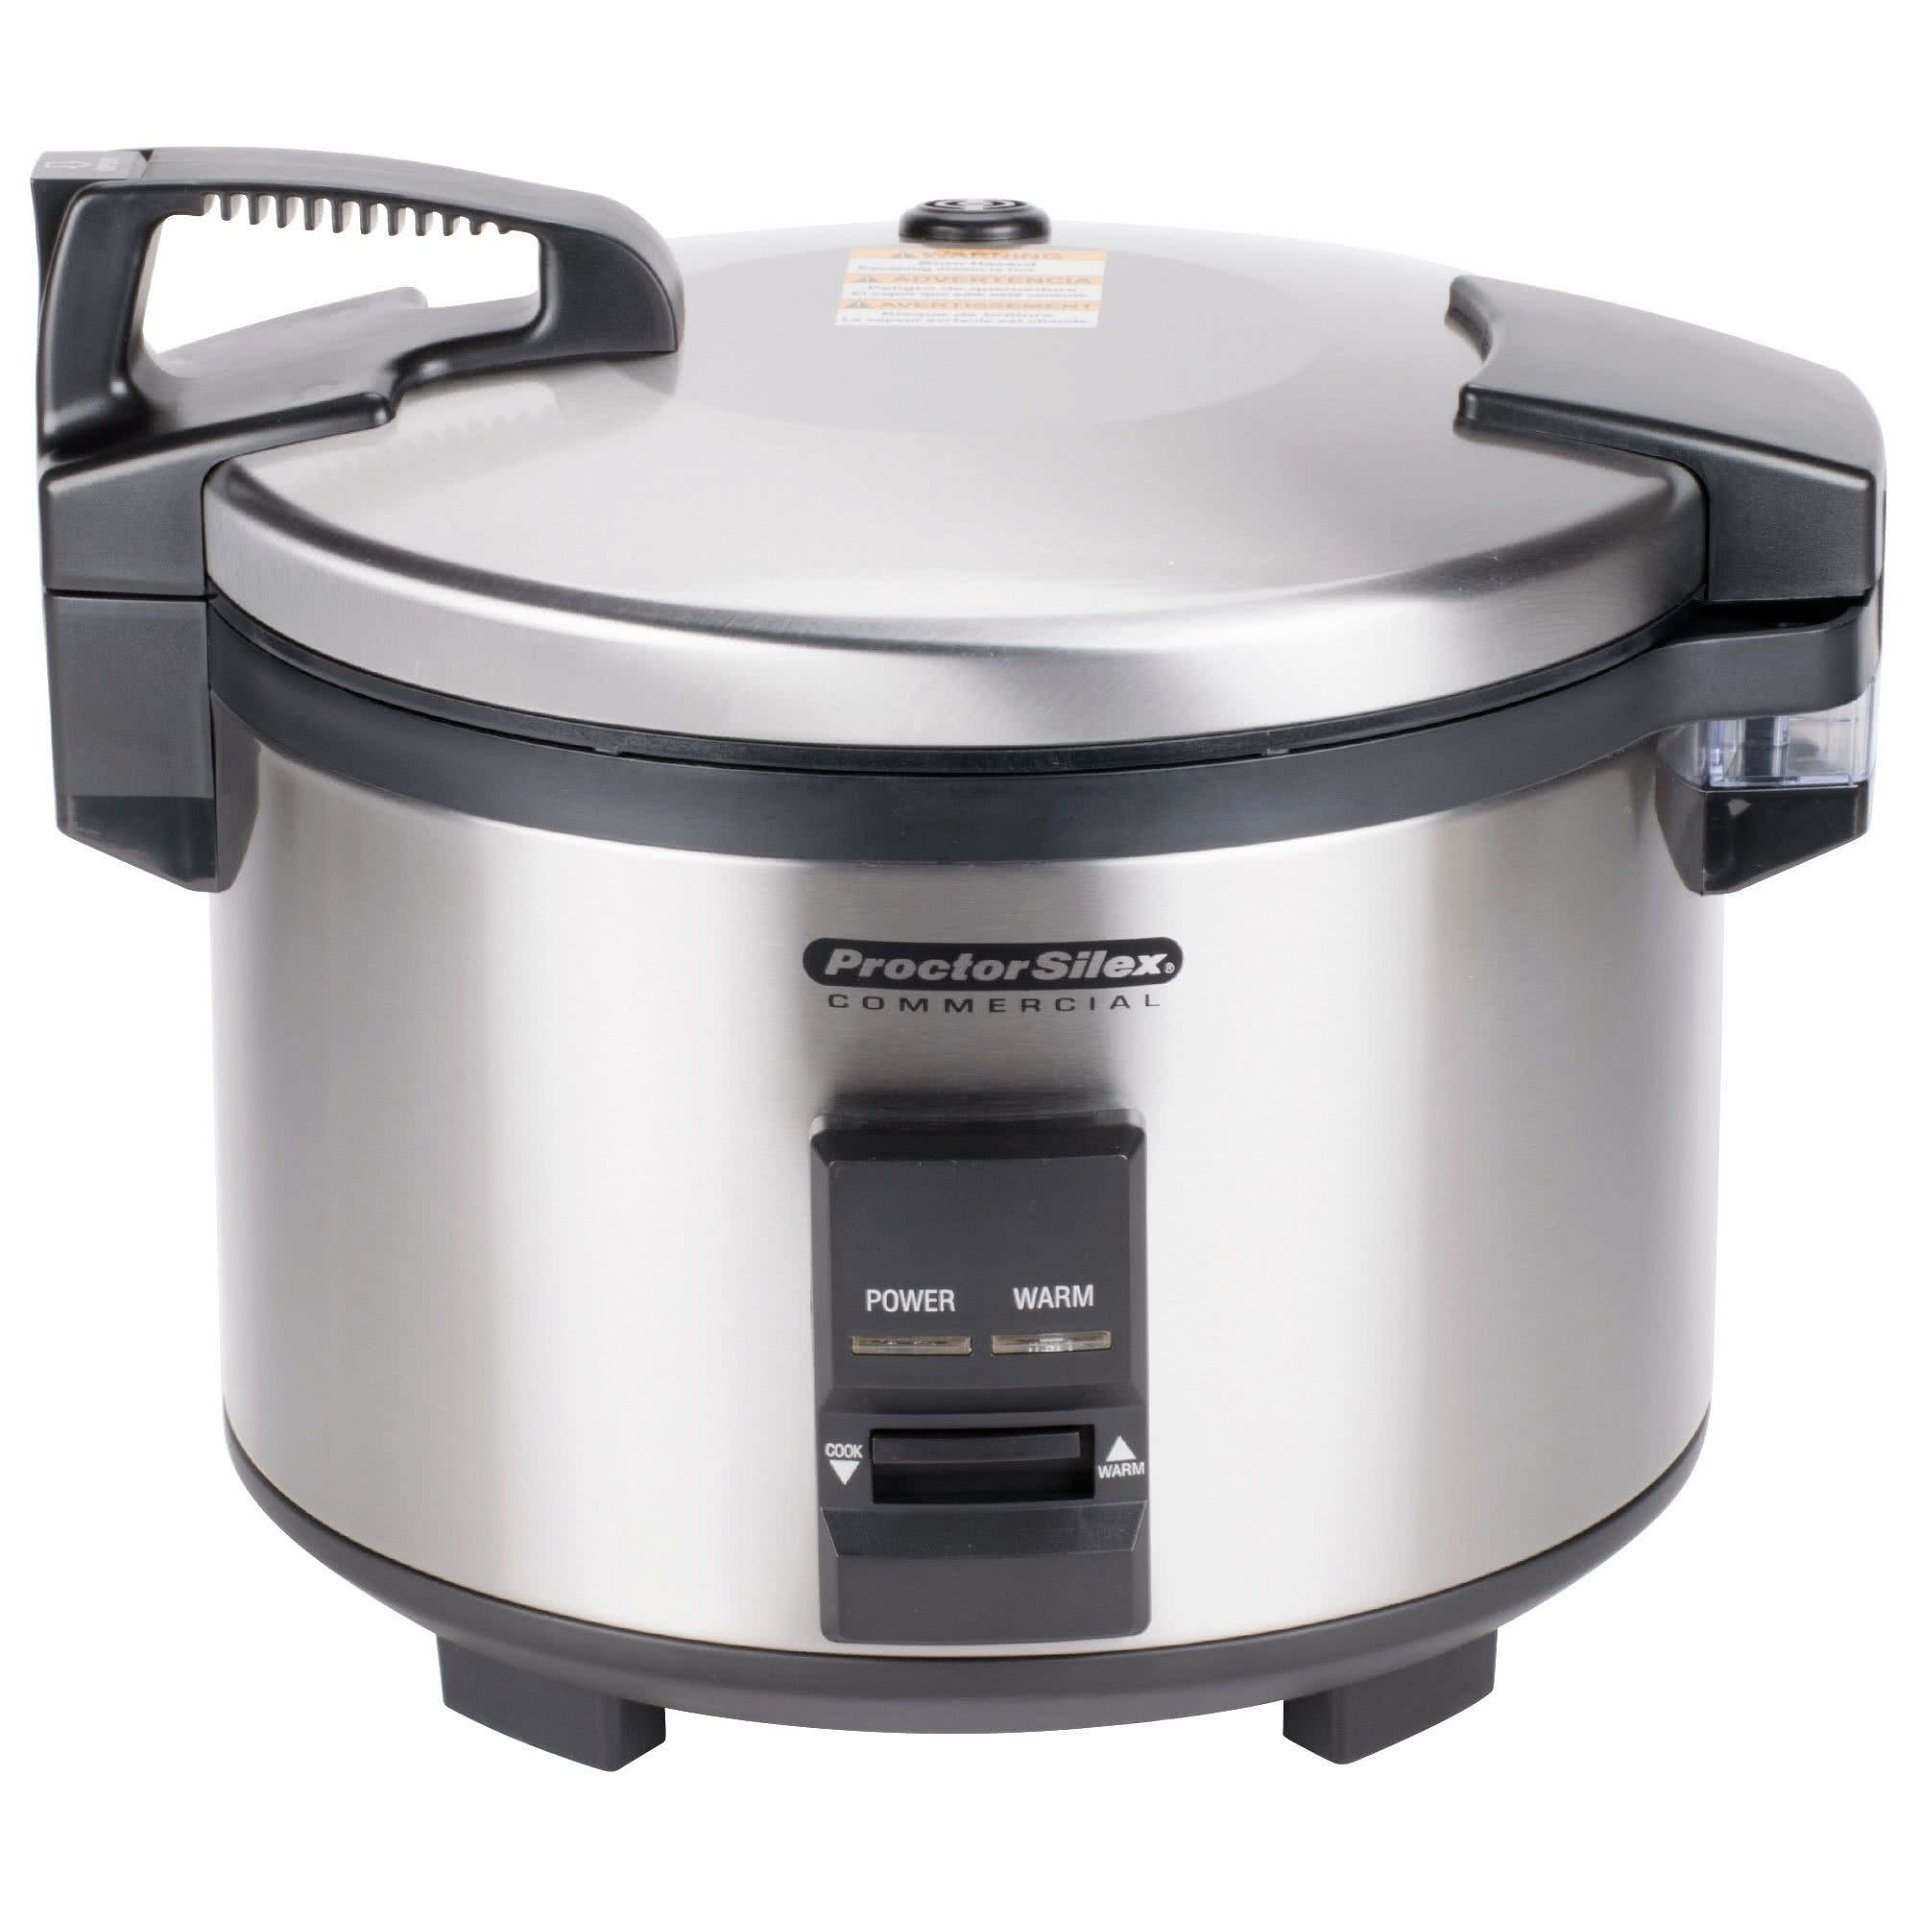 Proctor Silex, Kitchen, Proctor Silex Rice Cooker Vegetable Steamer  Automatic Keep Warm Still In Box